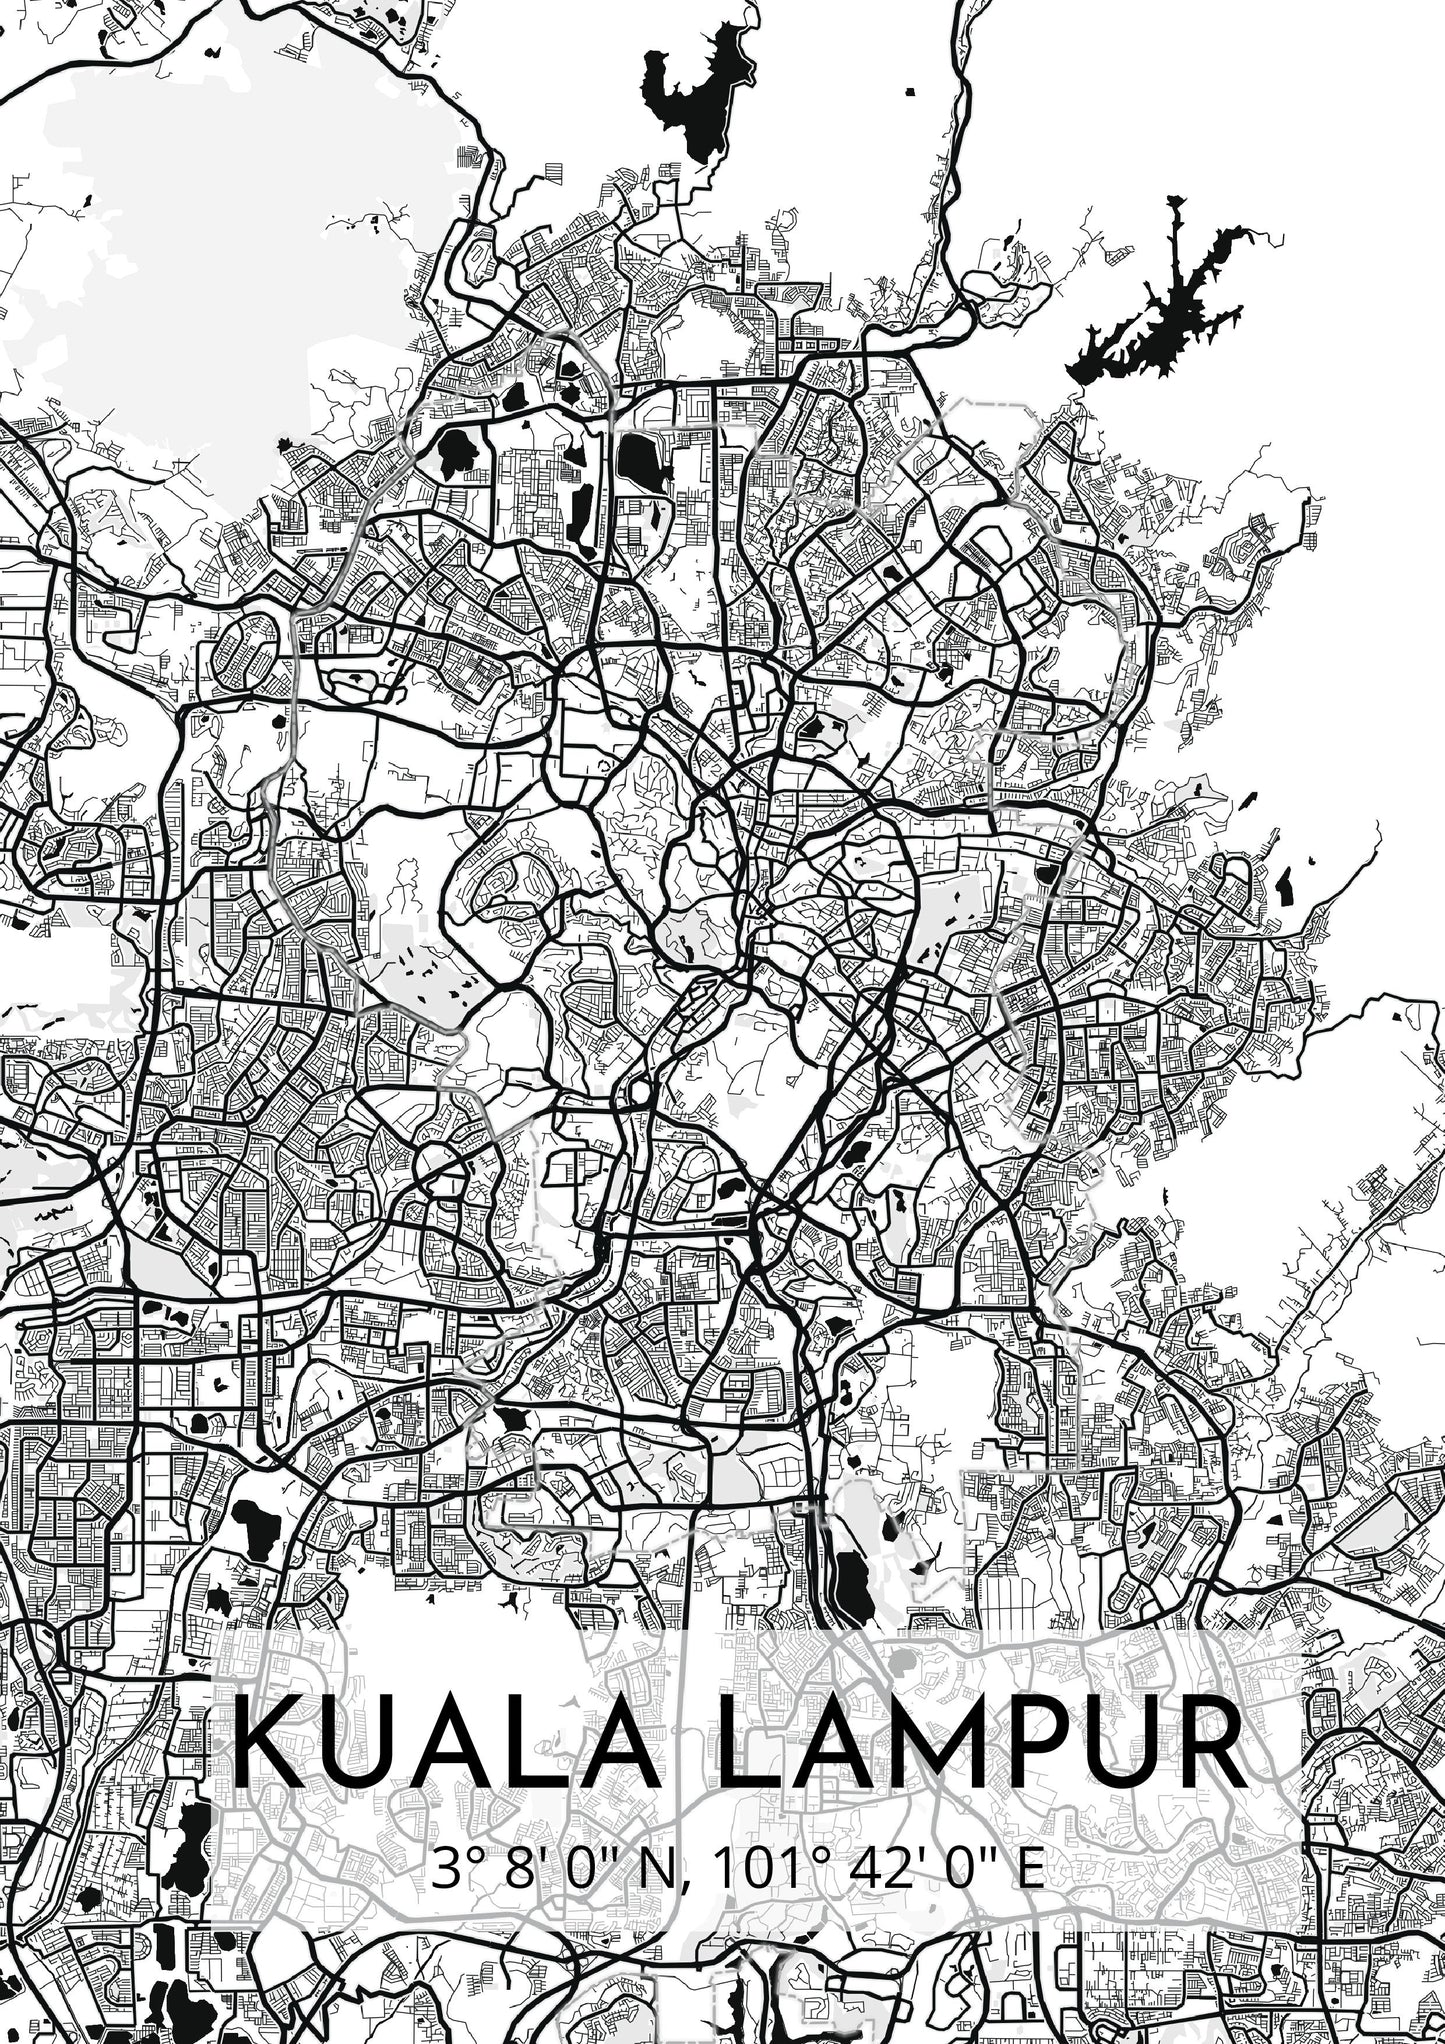 Kuala lampur